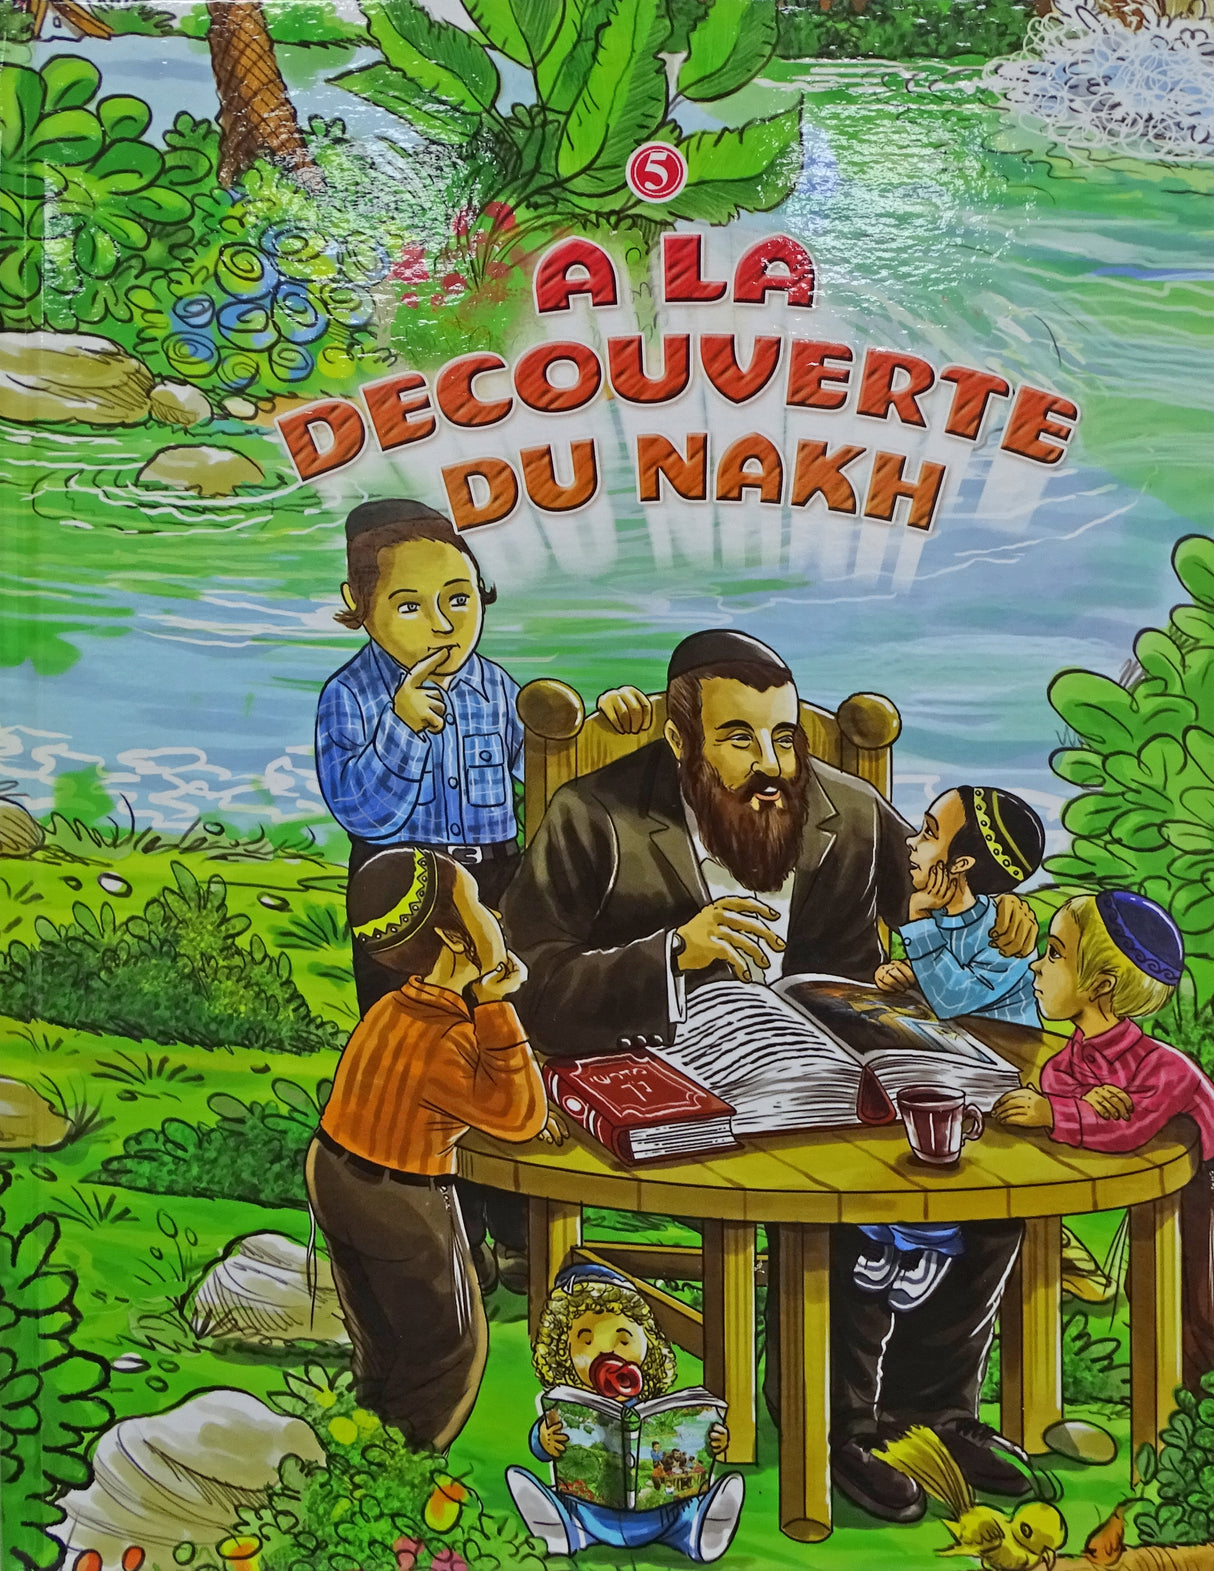 A La Decouverte Du Nakh vol 5